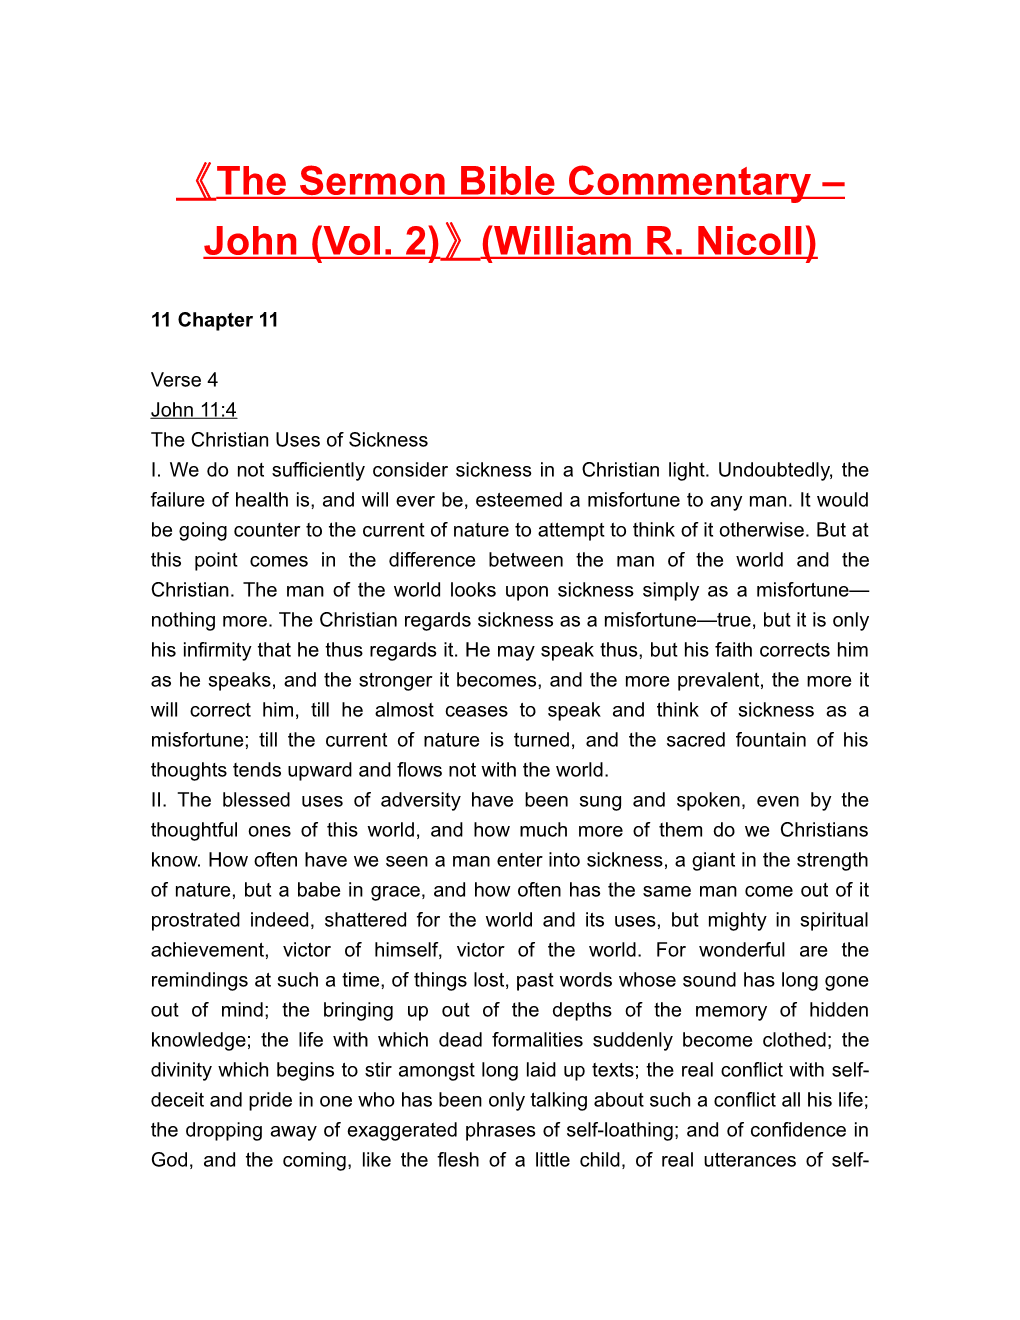 The Sermon Bible Commentary John (Vol. 2) (William R. Nicoll)